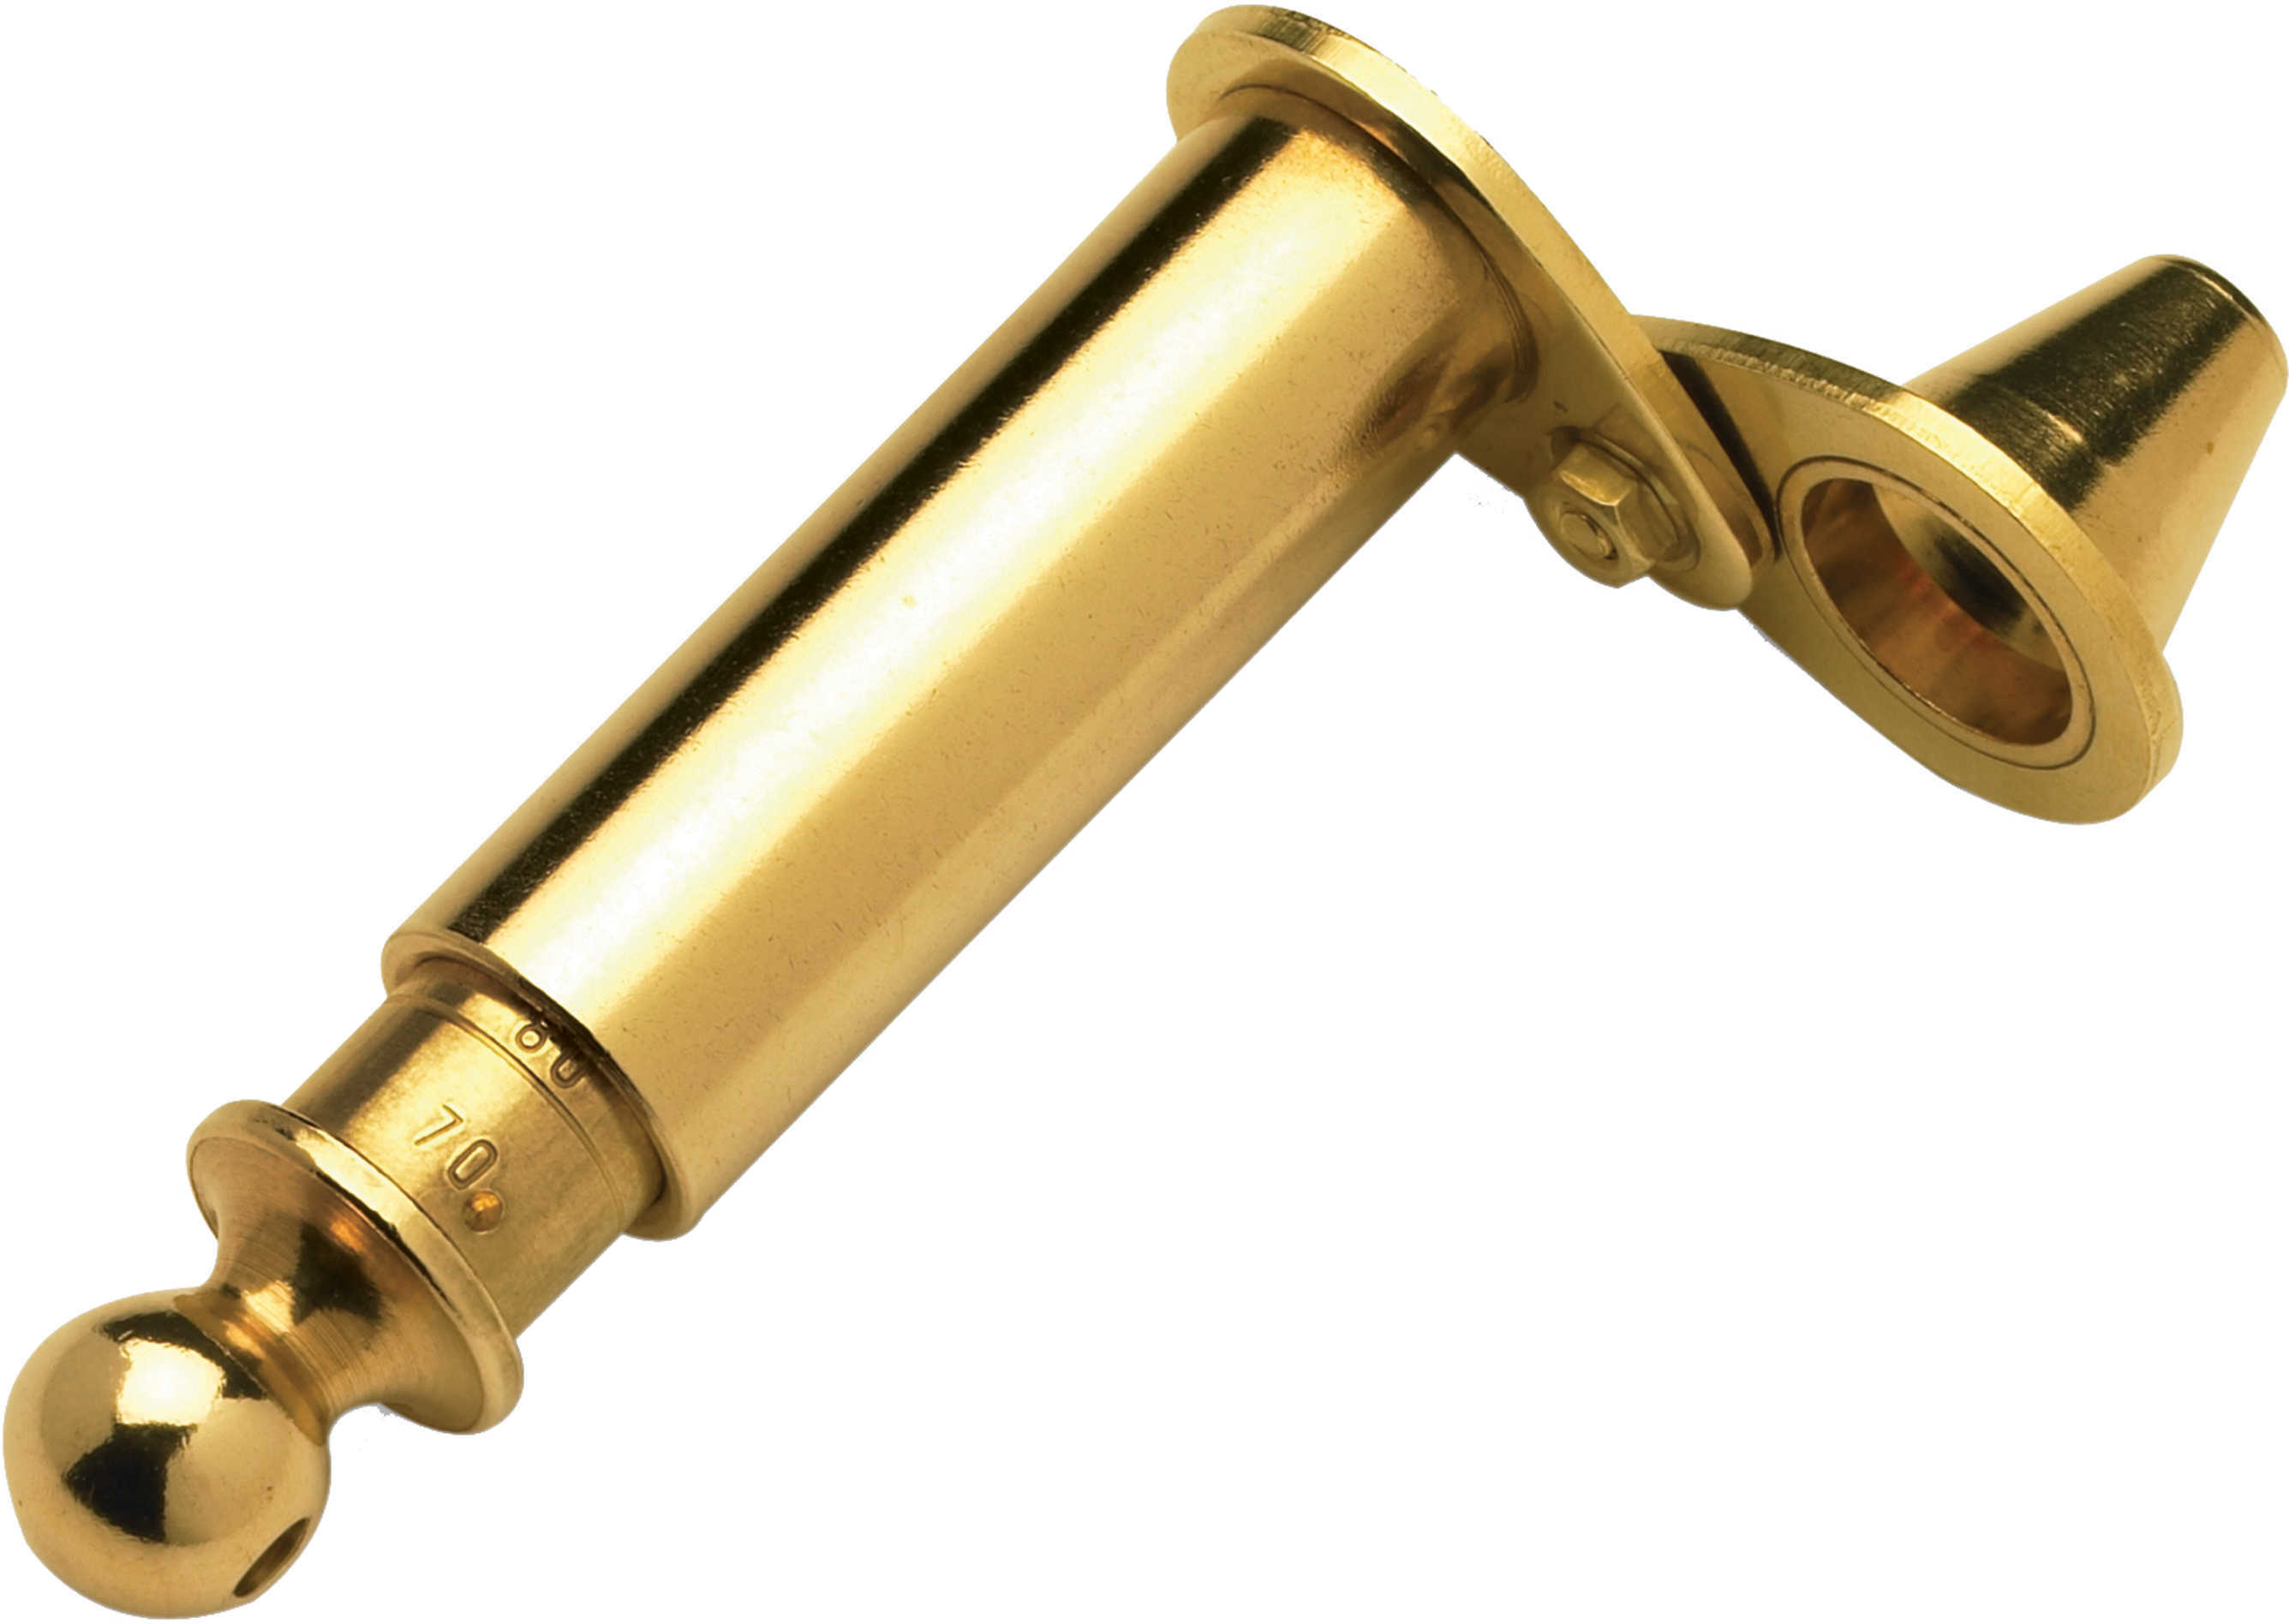 CVA Trophy Powder Measure Brass Telescopic W/Funnel